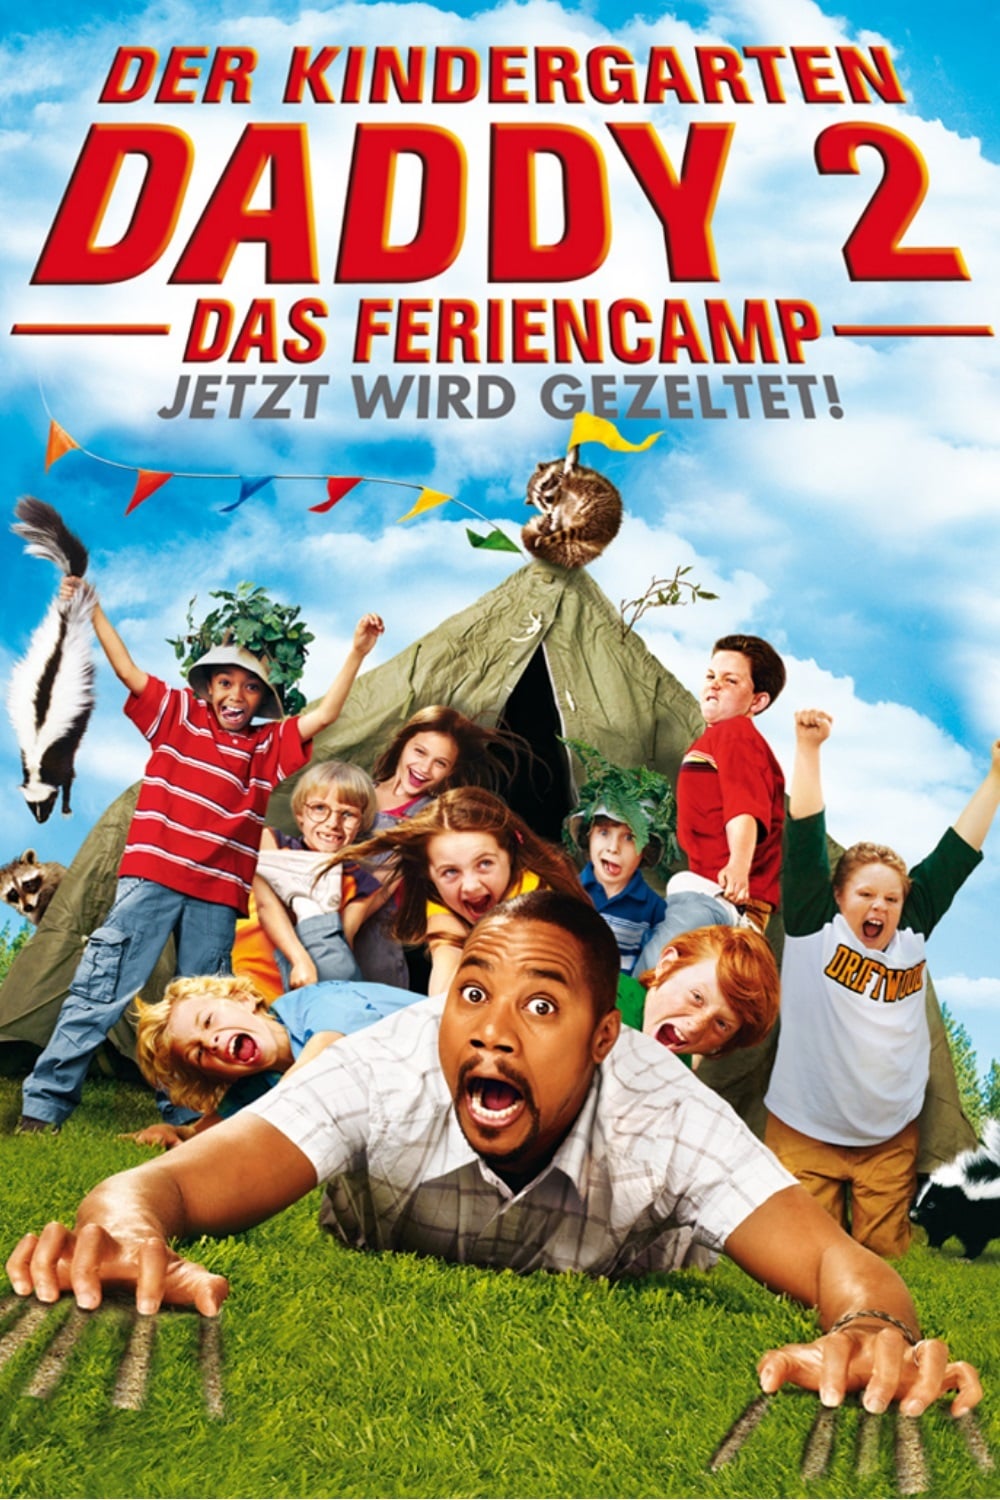 Plakat von "Der Kindergarten Daddy 2: Das Feriencamp"